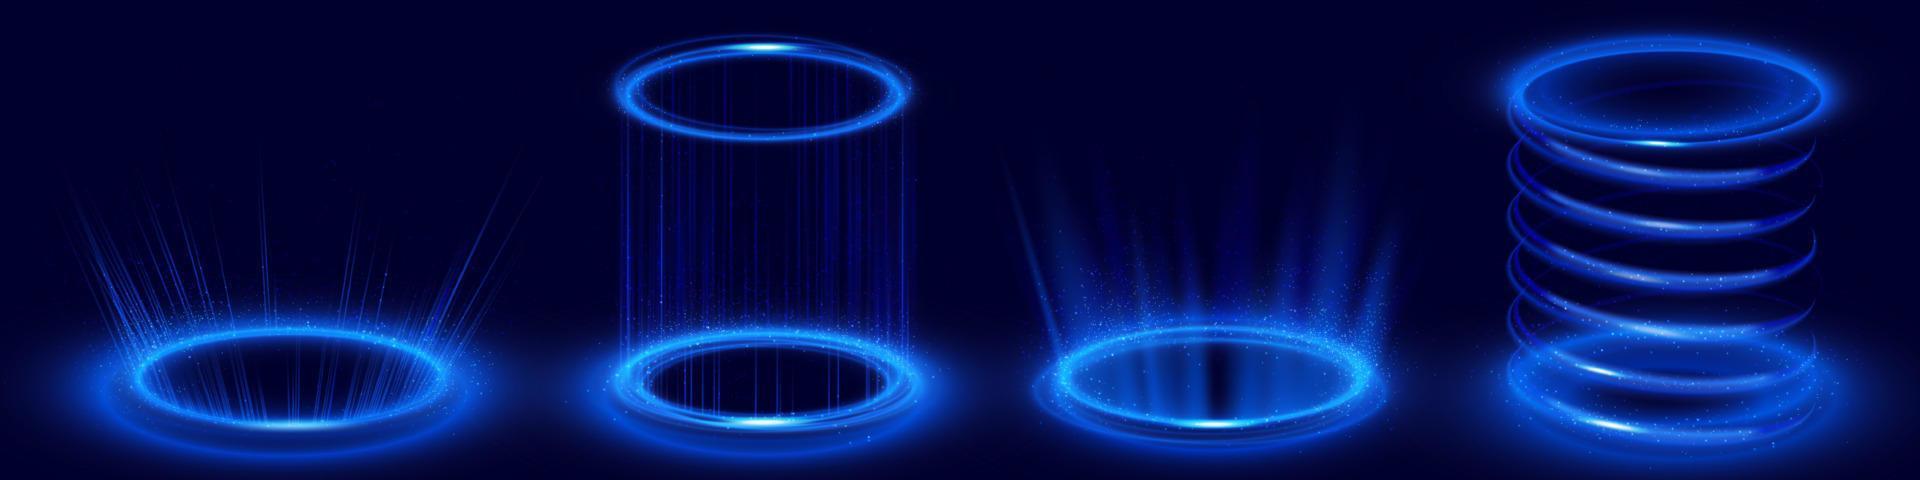 portais de holograma circular com luz neon azul vetor